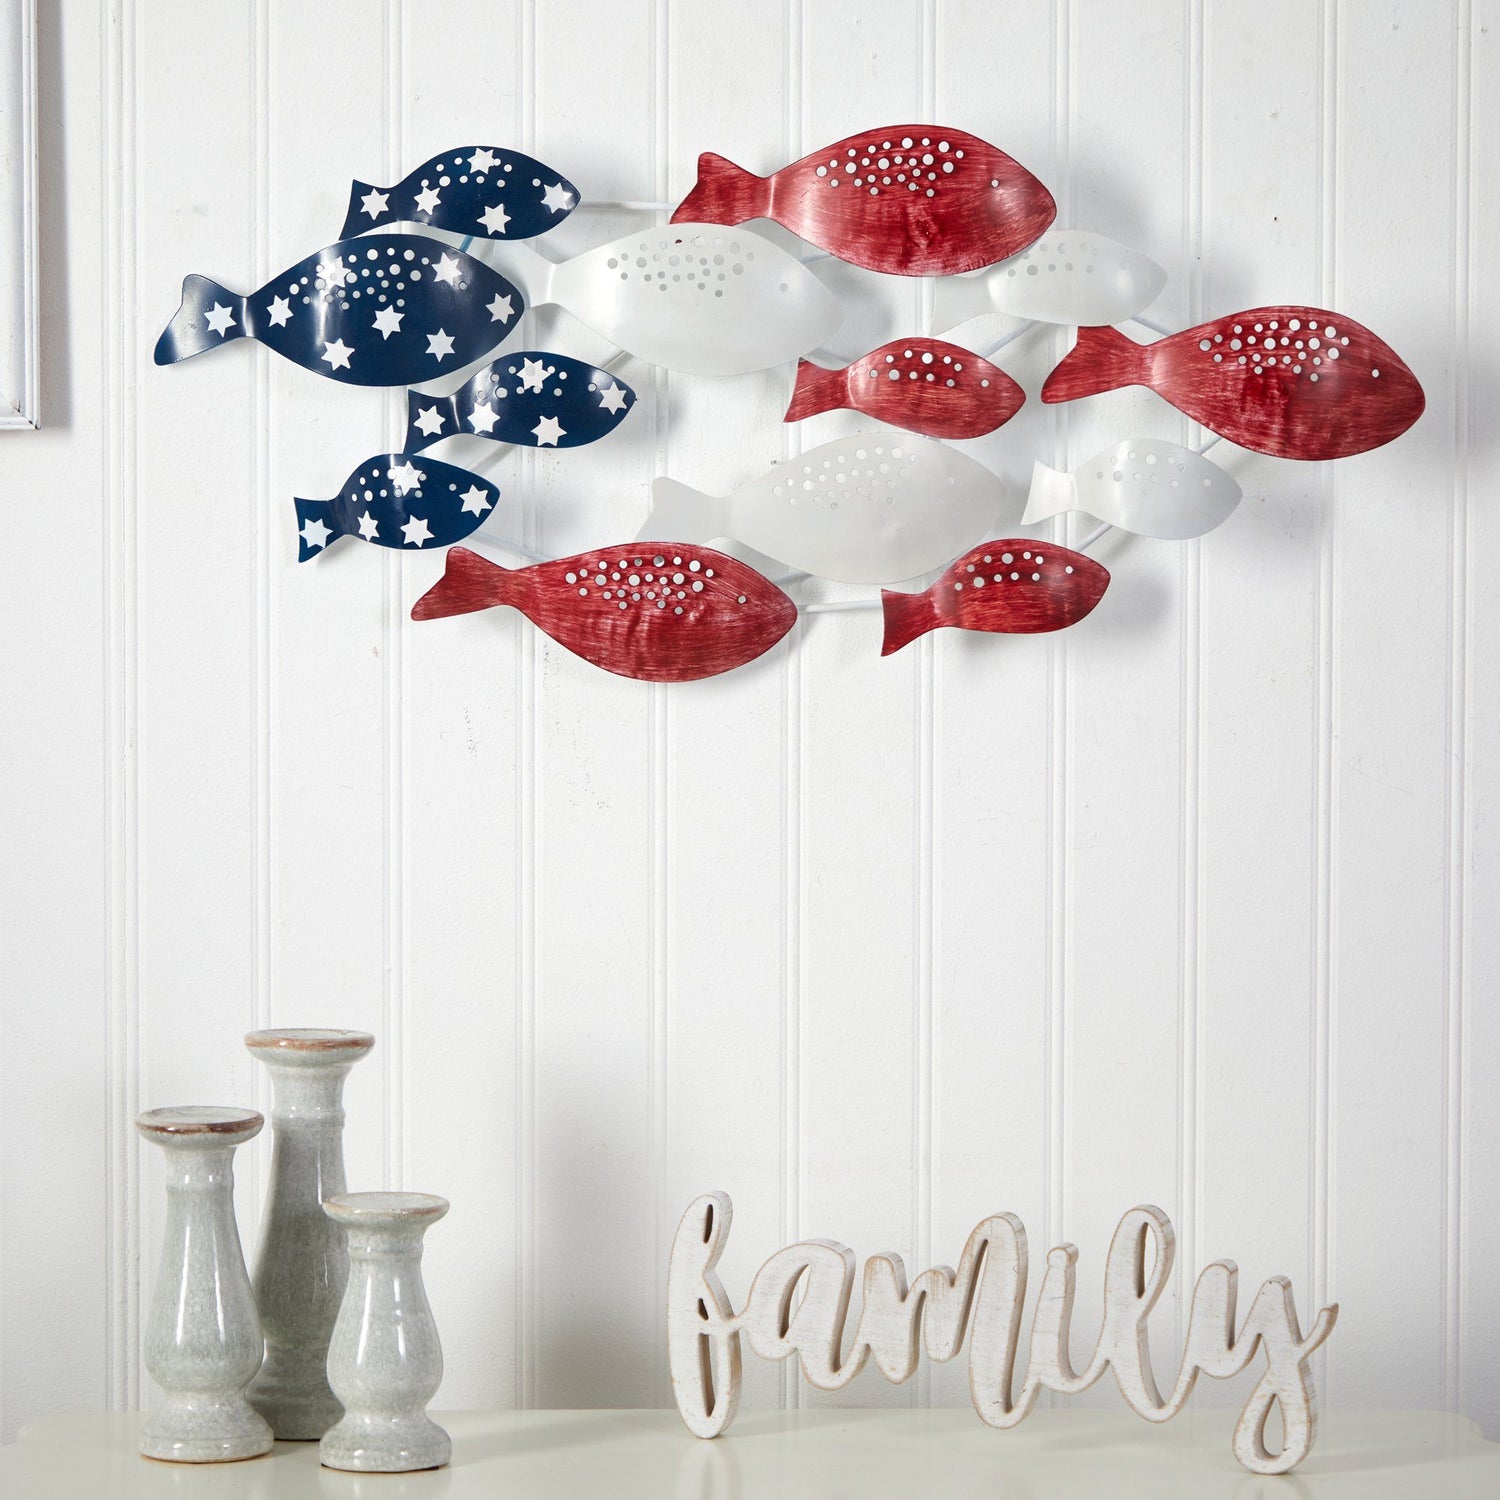 39" Patriotic Metal Fishes Wall Art Décor"